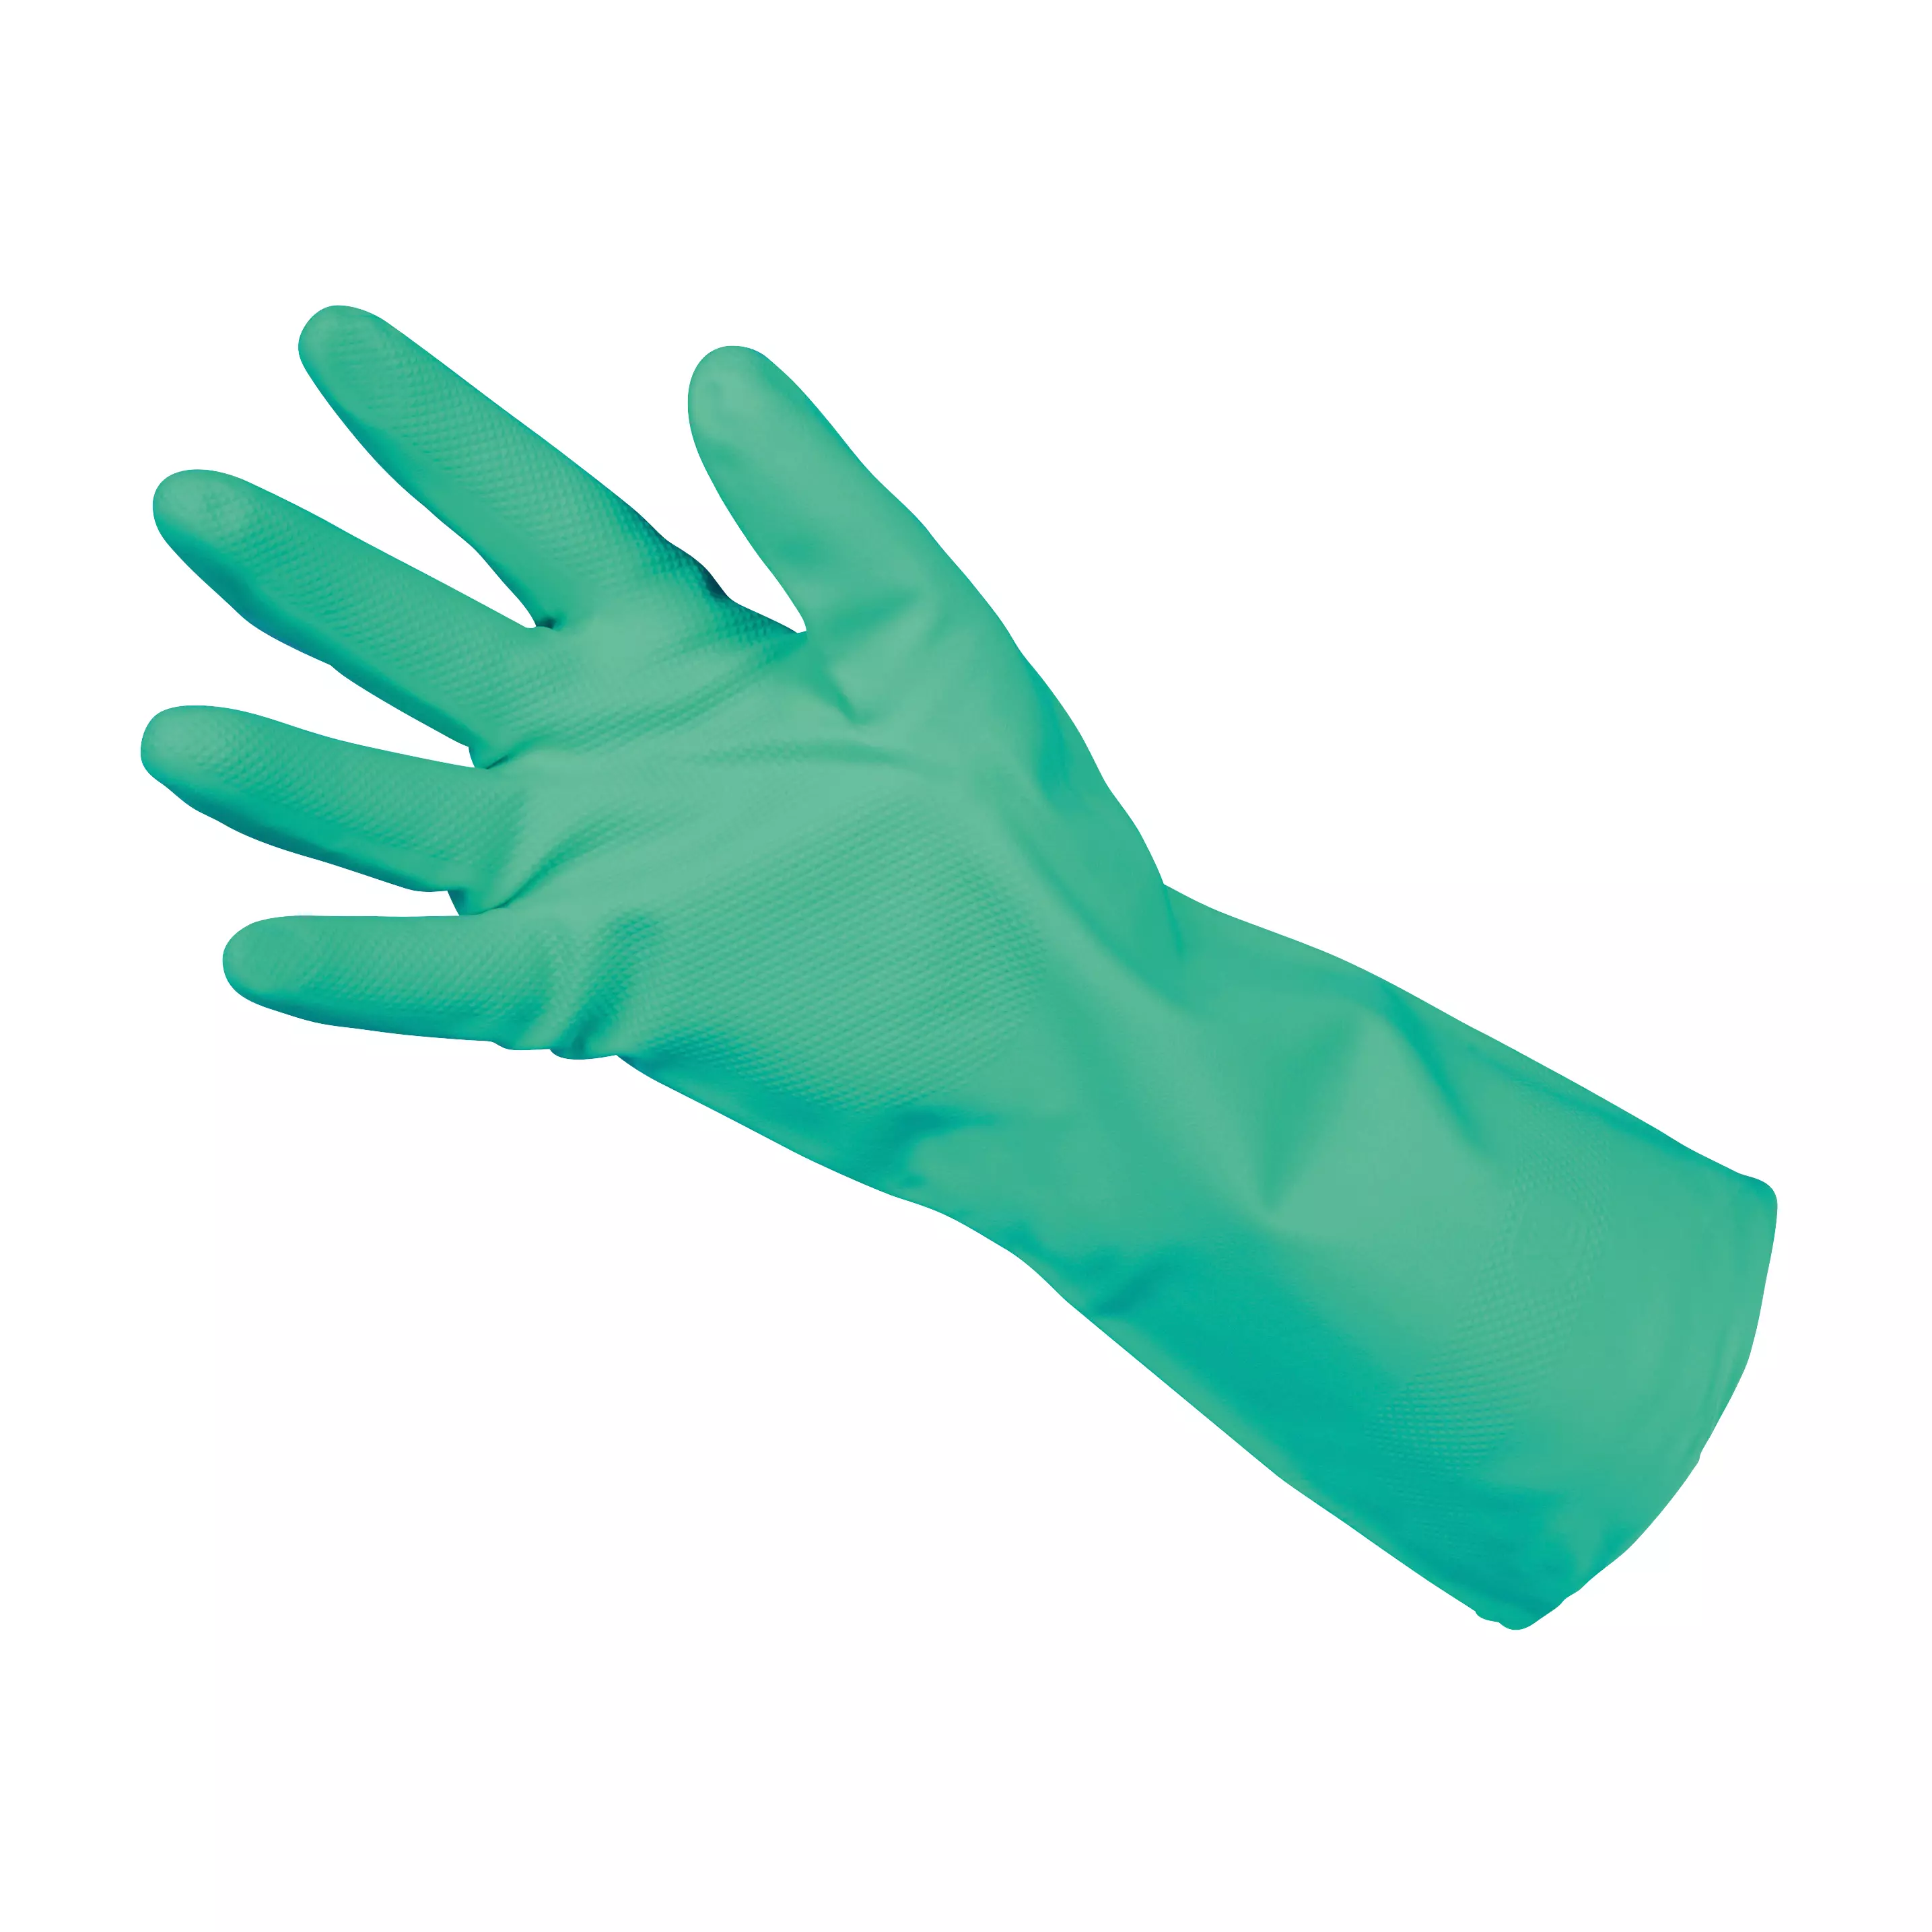 Chemikalienschutzhandschuh Nitril 33, 12 Paar - Grün, 7